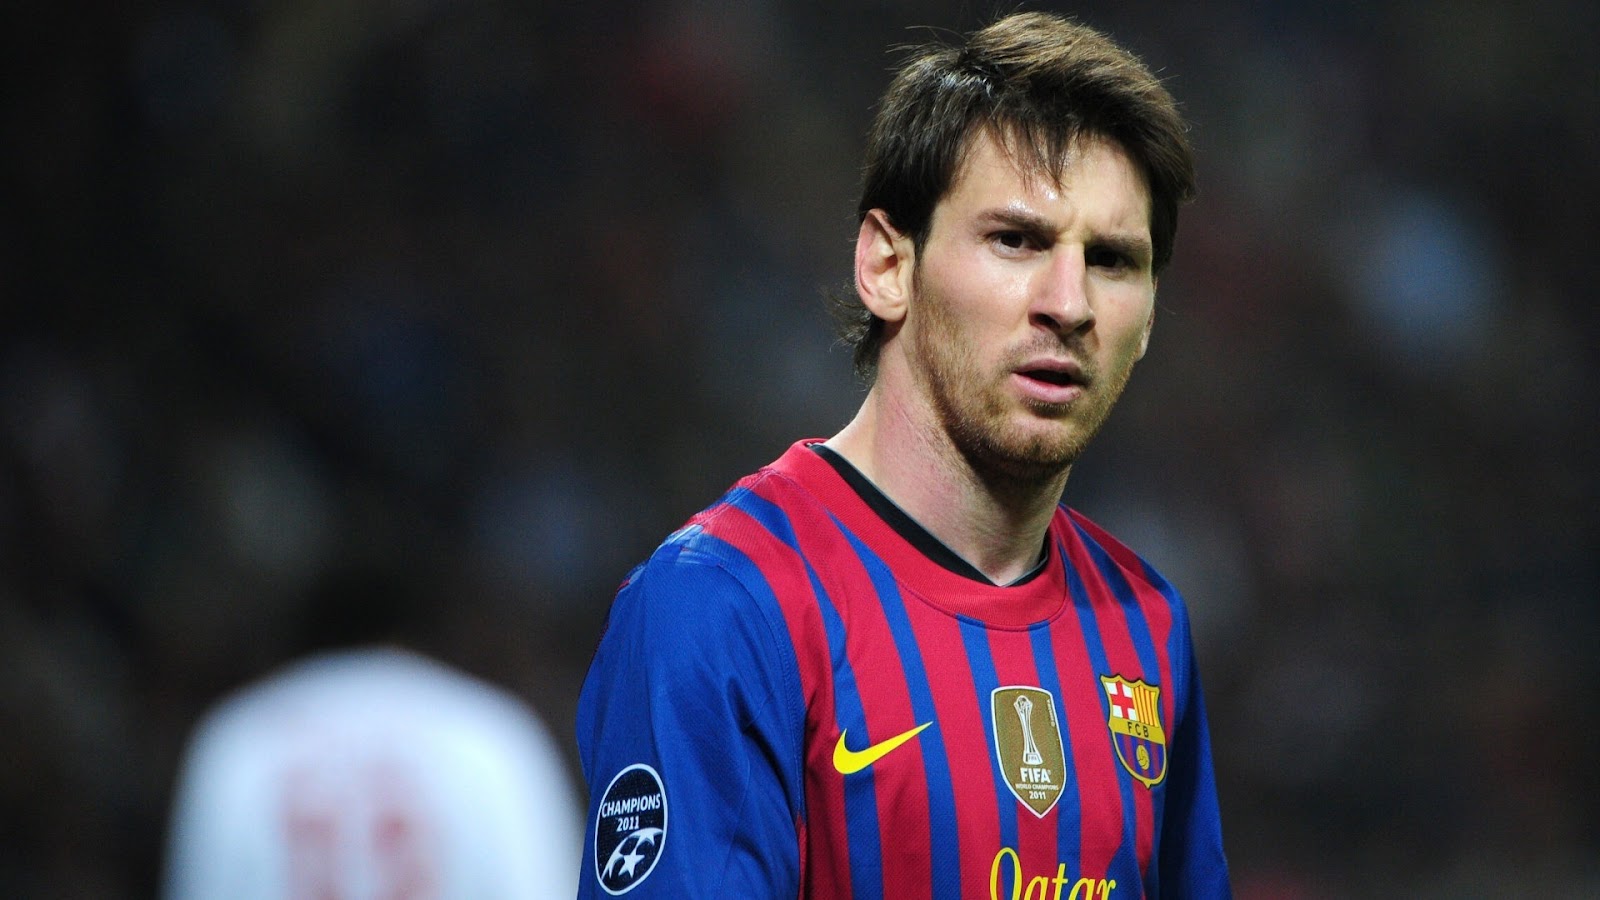  Lionel Messi 13 Jugador de Barcelona El mejor Jugador del mundo